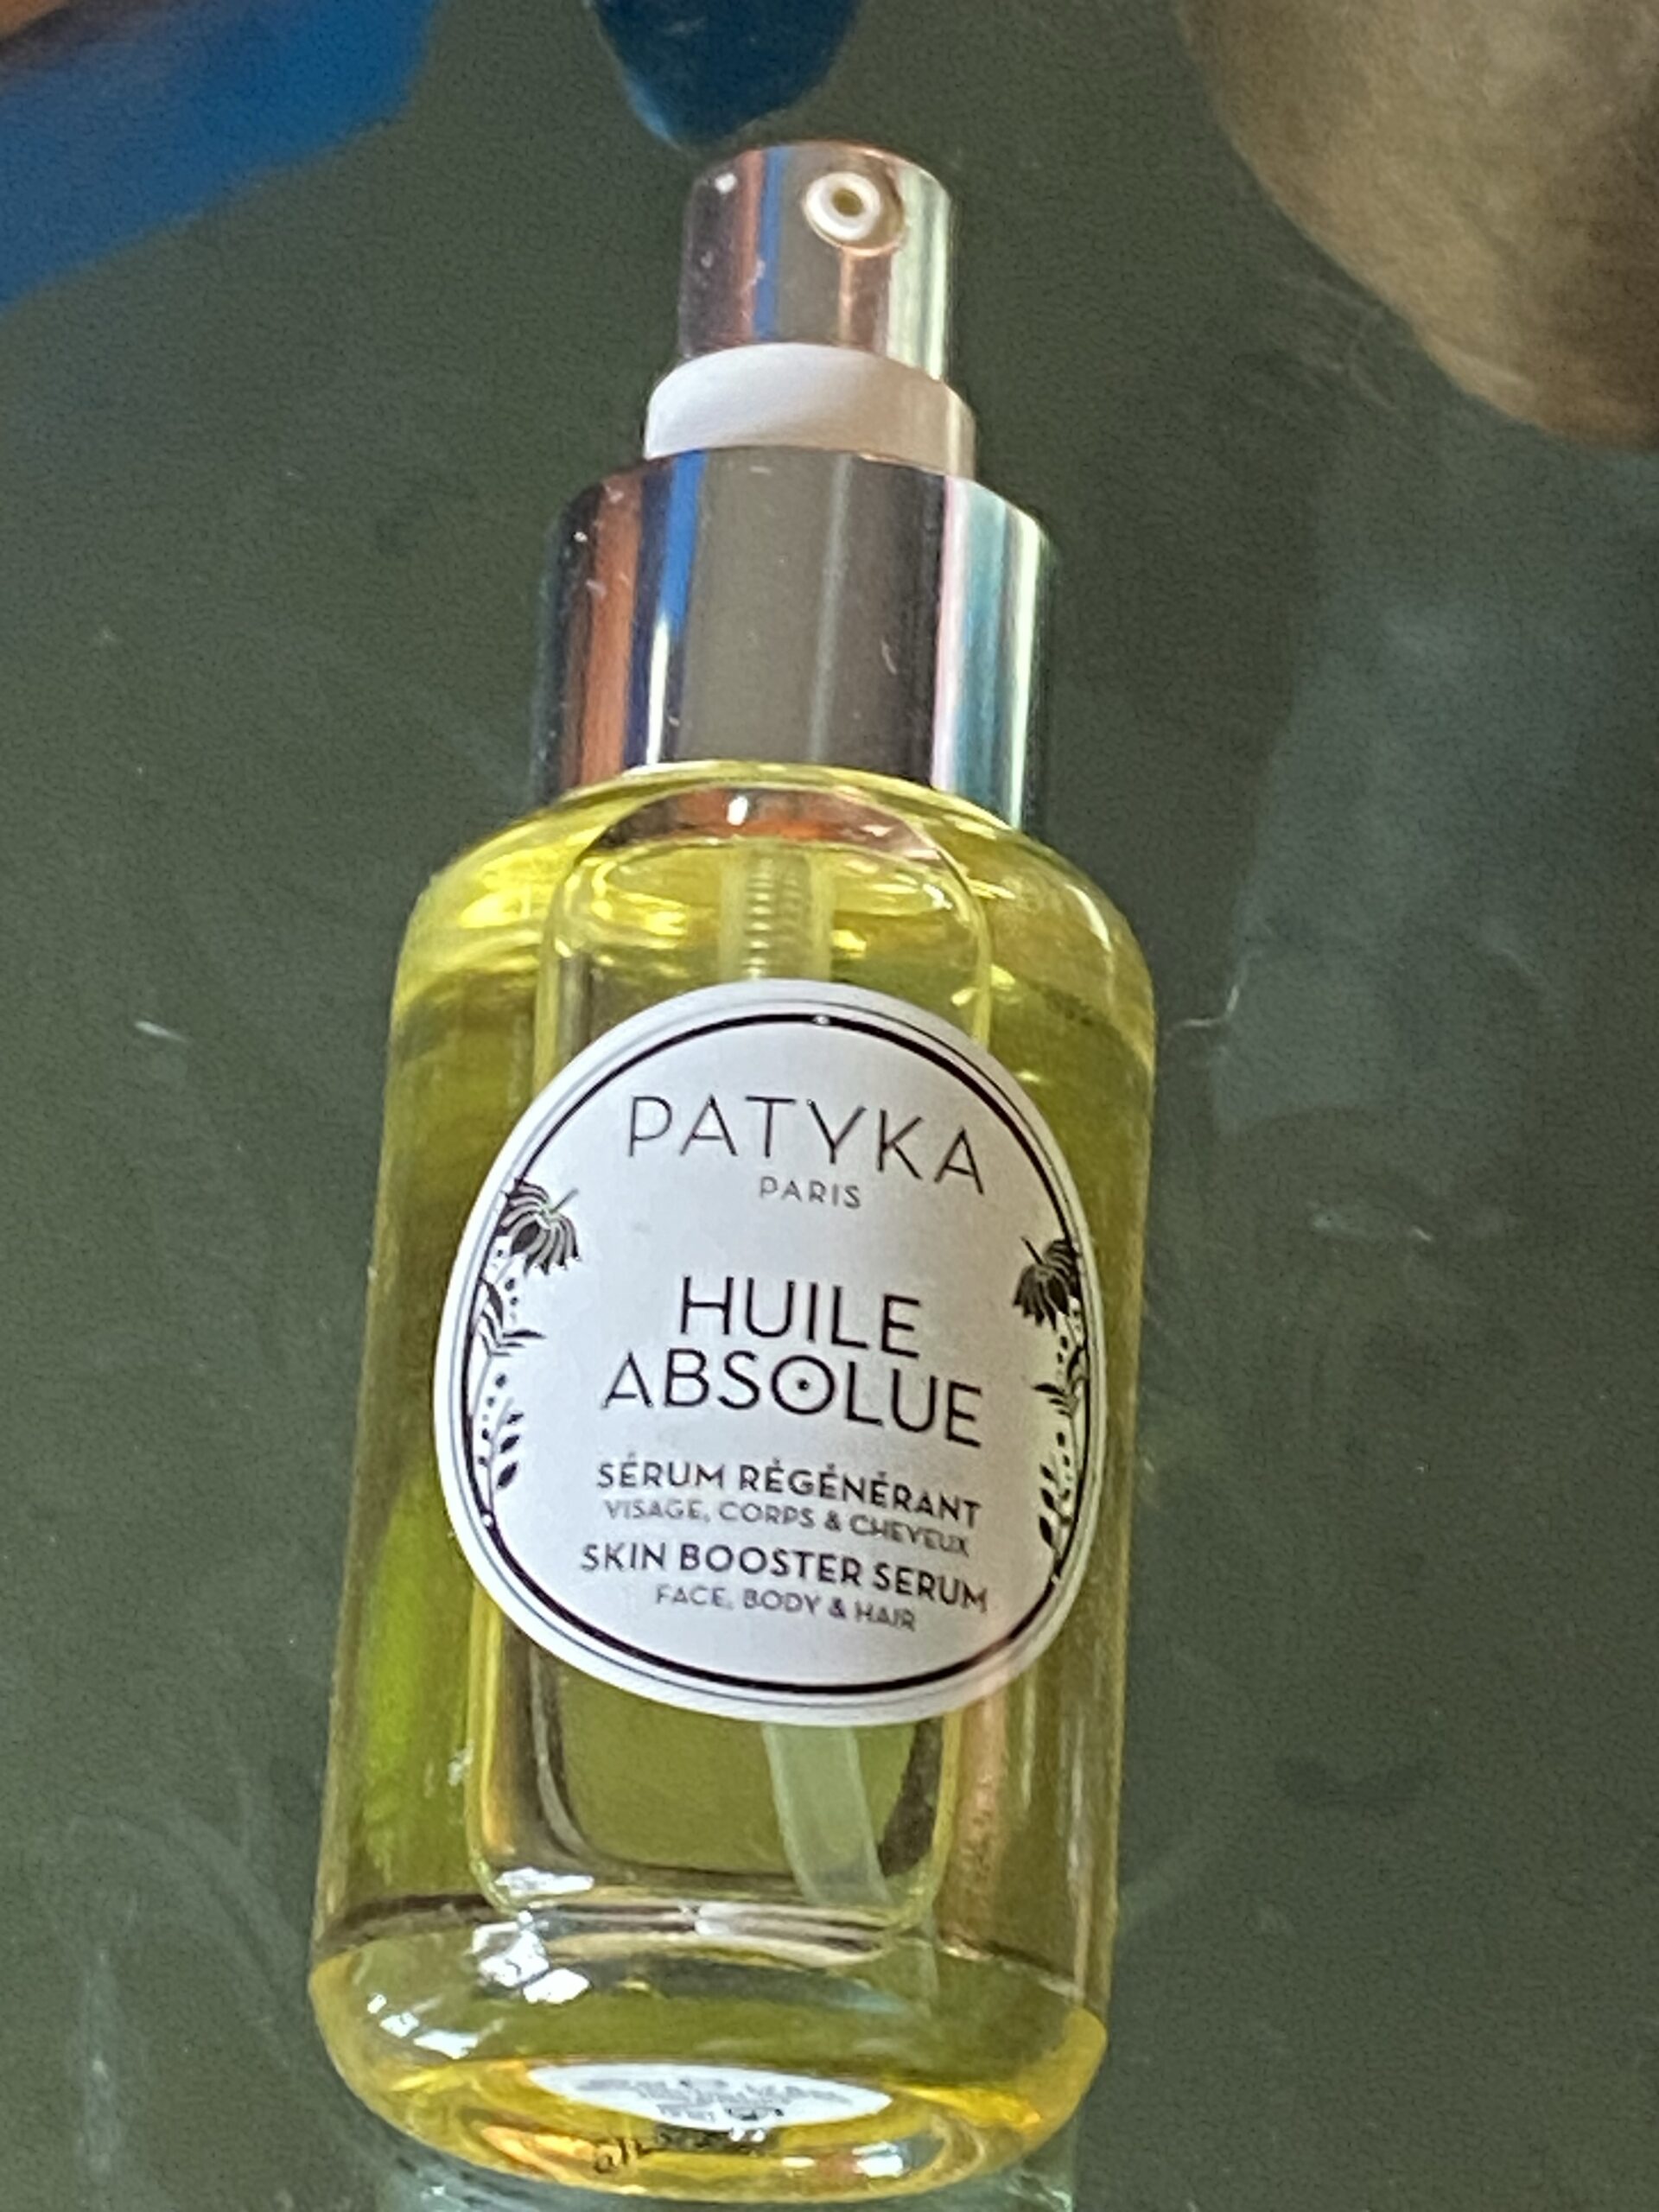 Patyka huile absolue skin booster serum